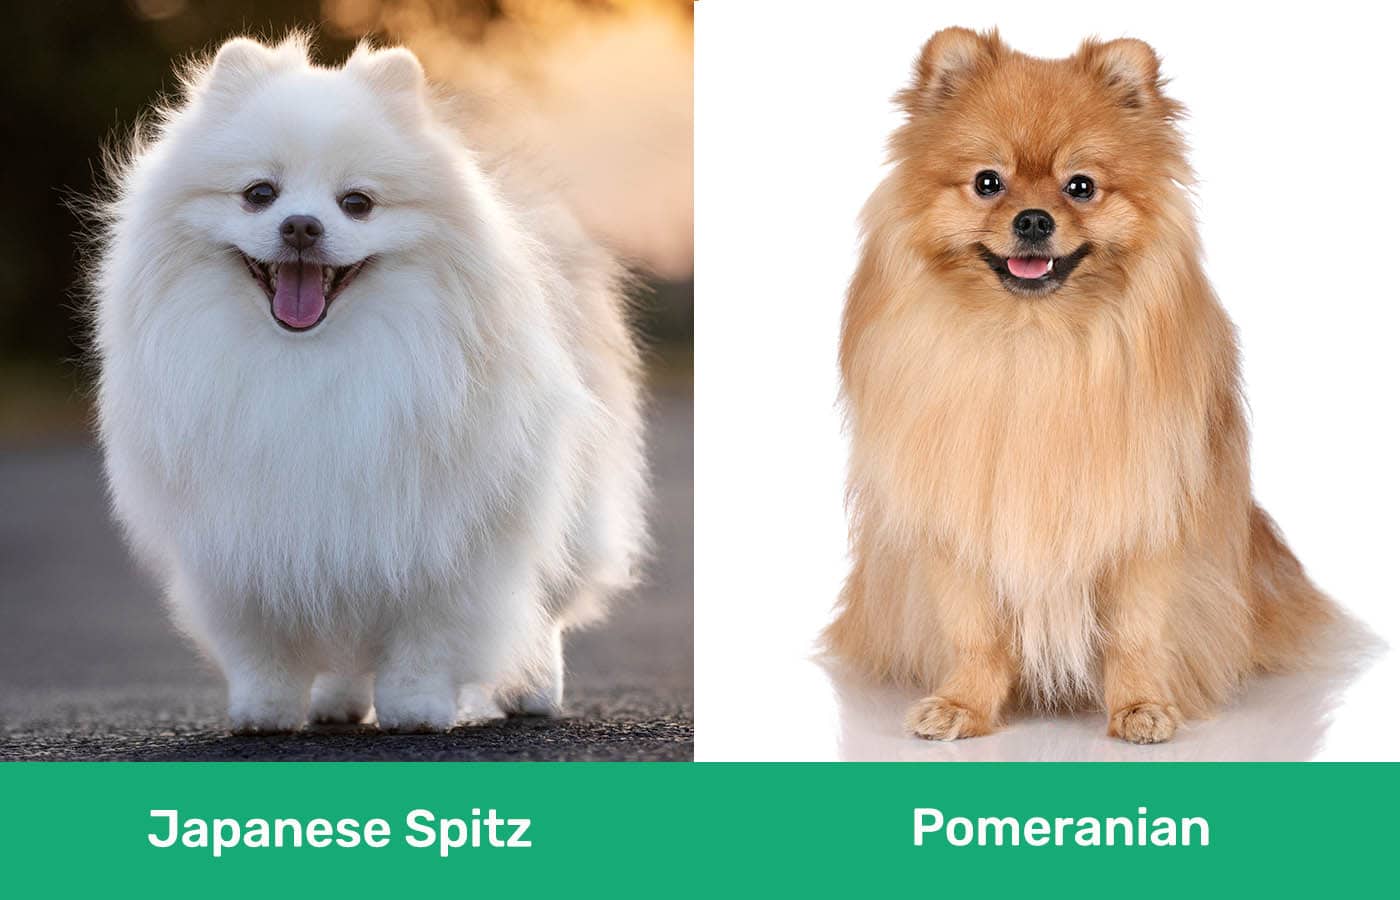 Japanese Spitz vs Pomeranian side by side